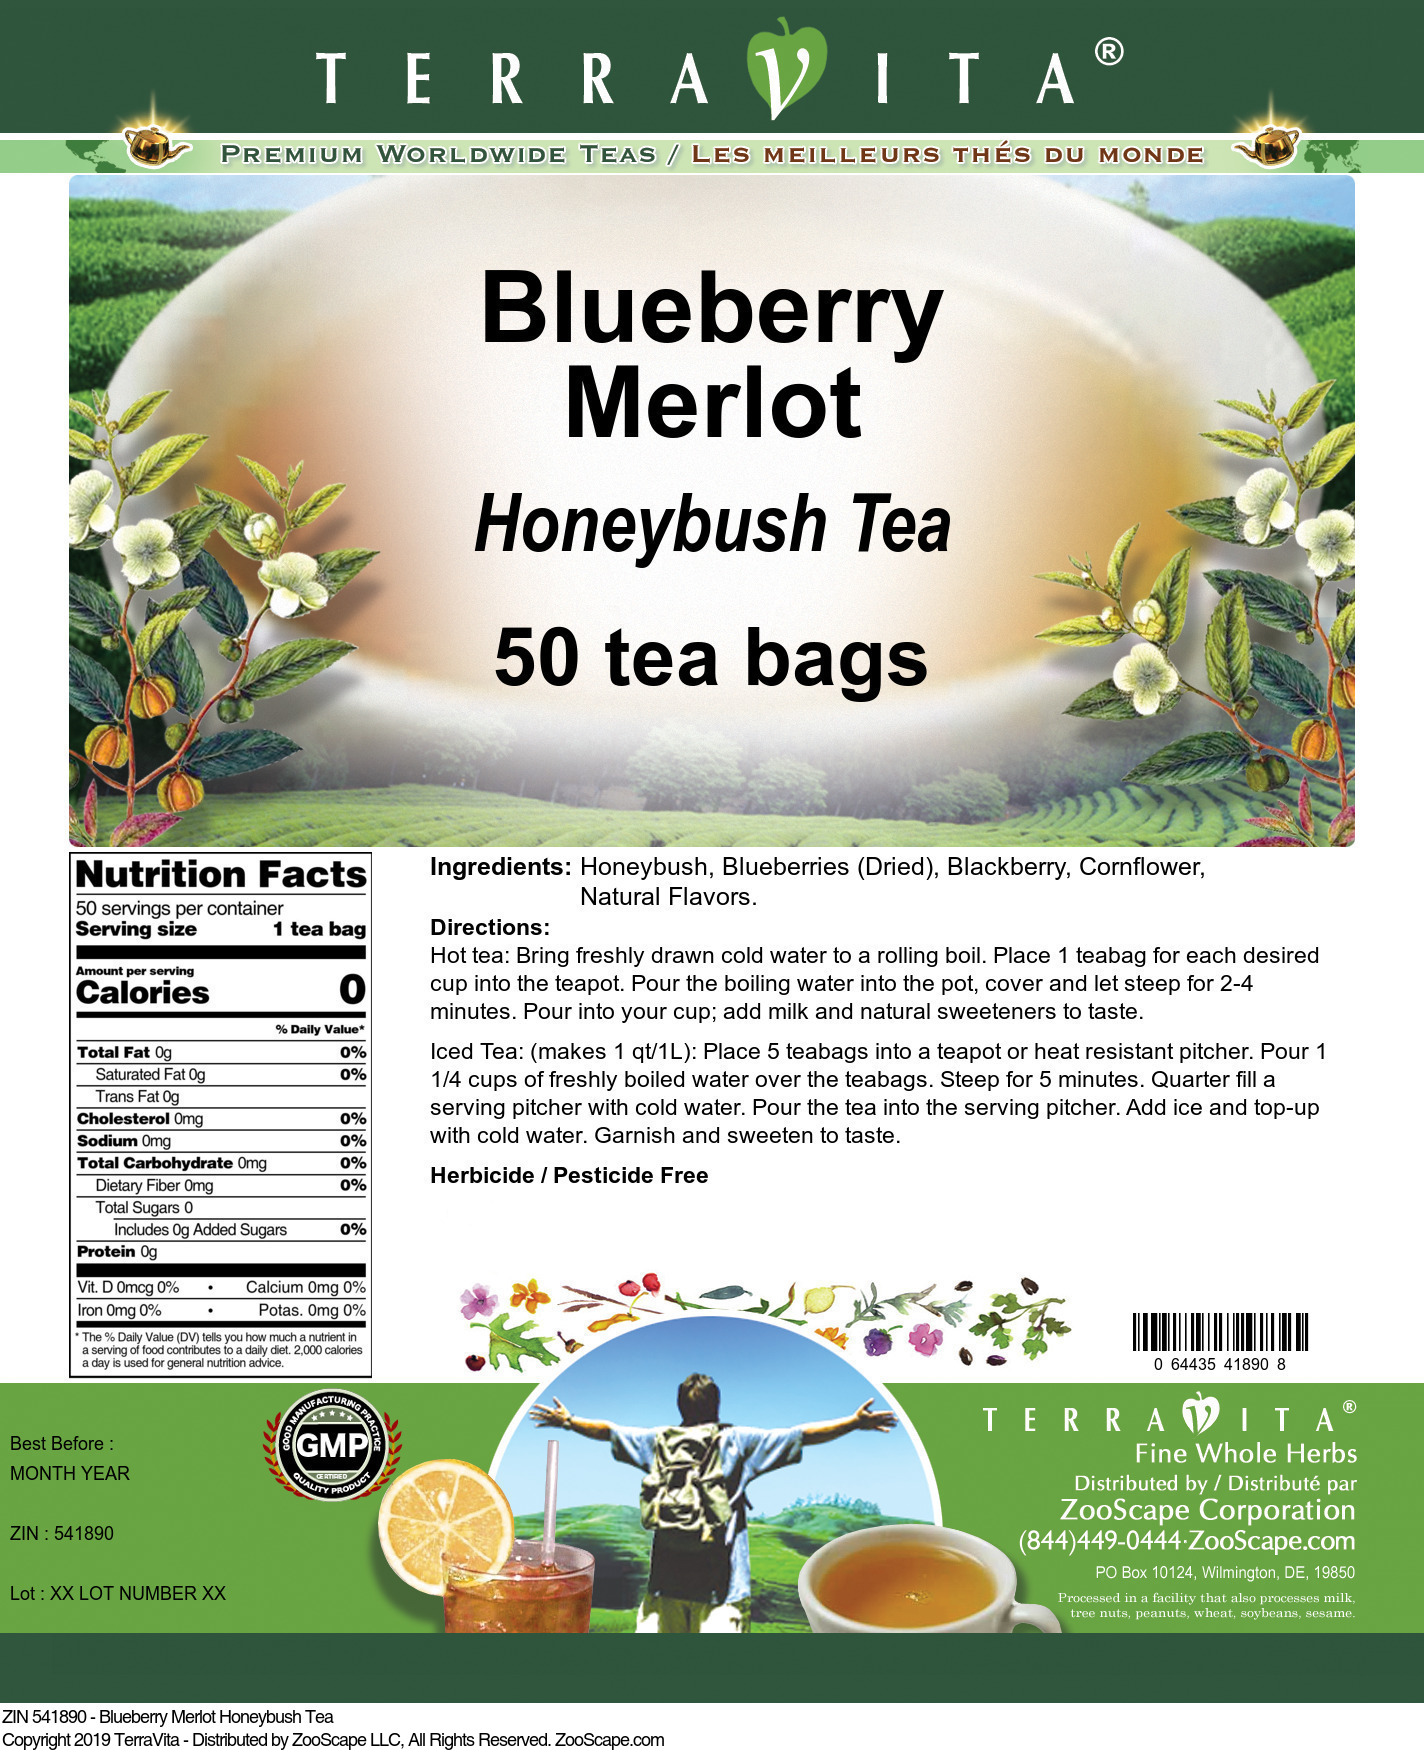 Blueberry Merlot Honeybush Tea - Label